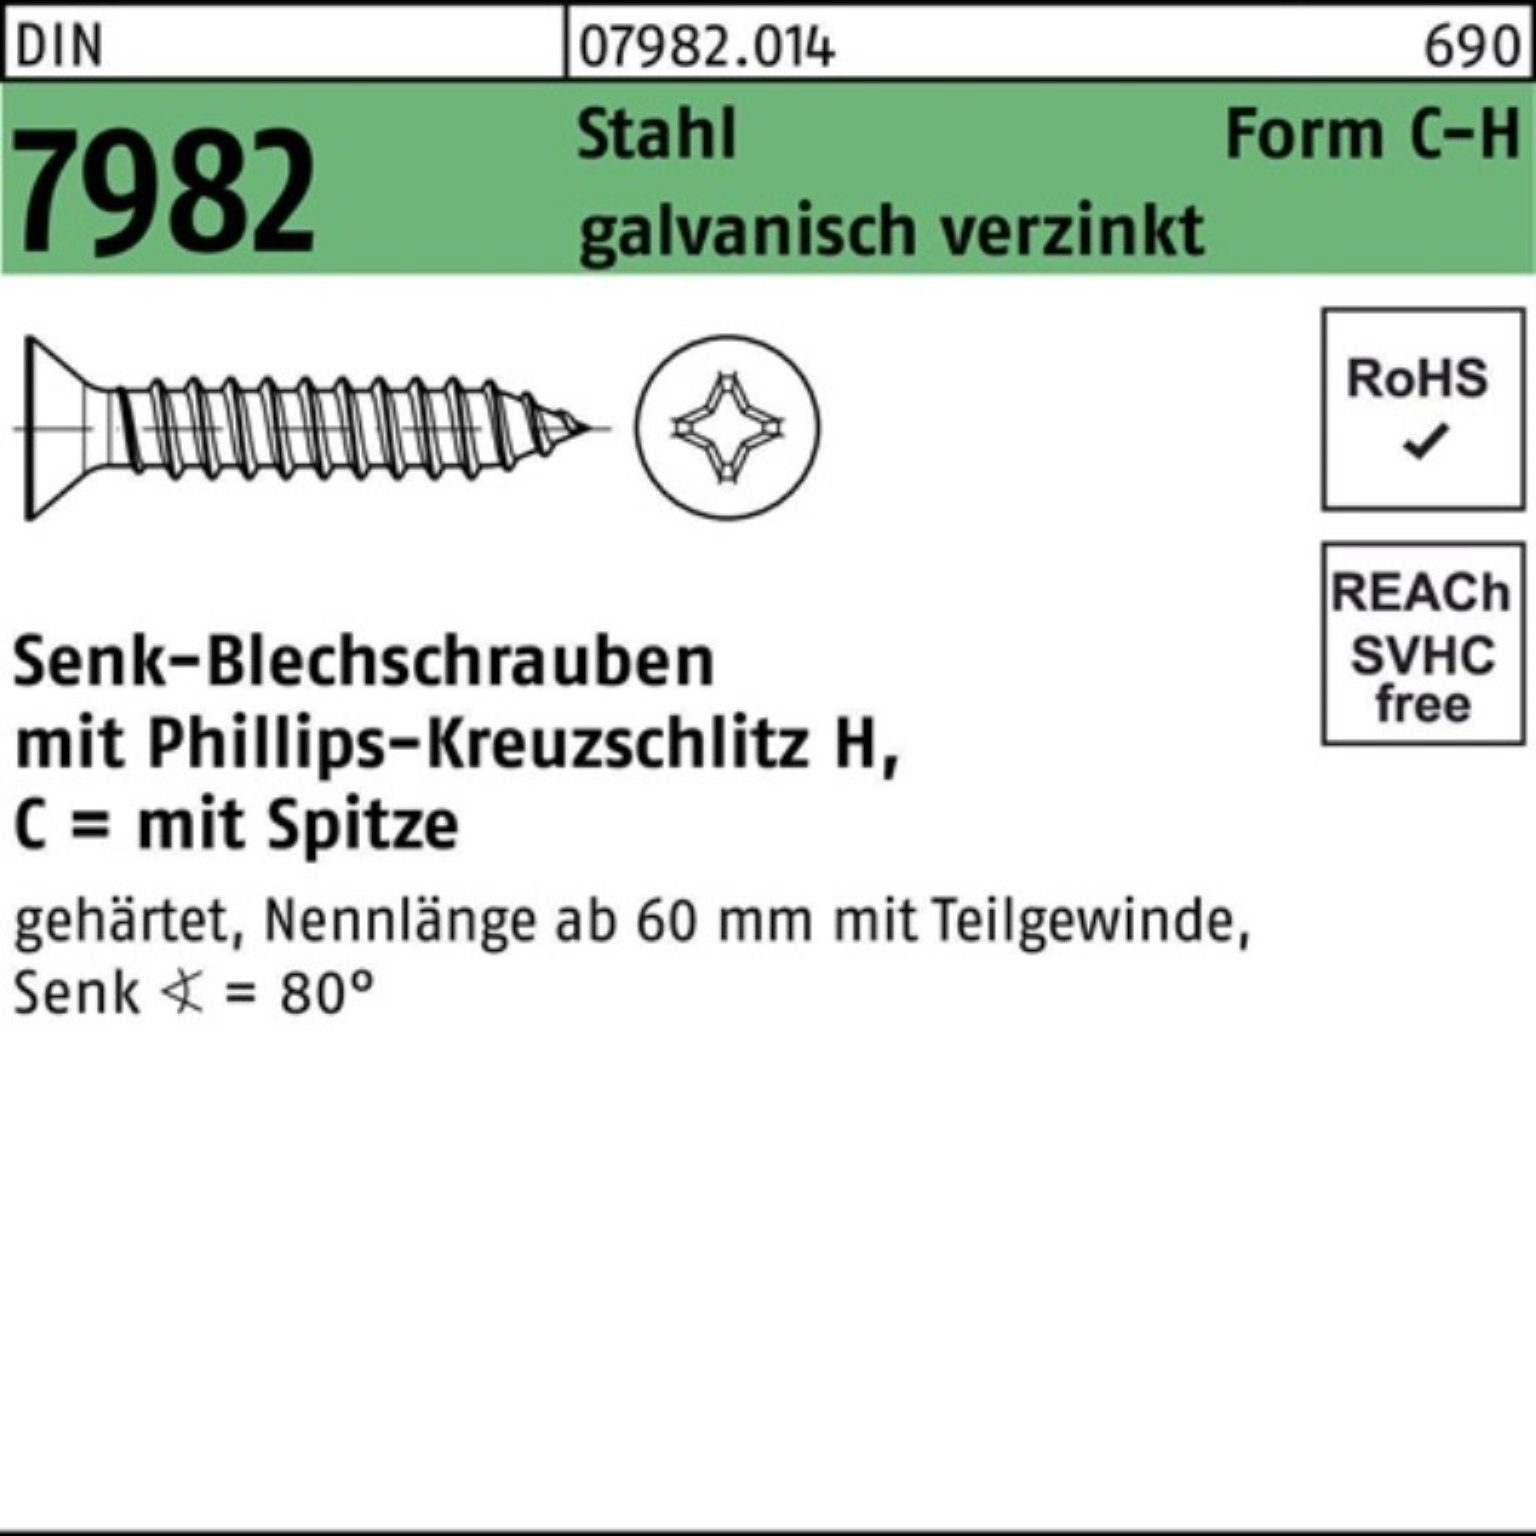 Pack 4,8x120-H 7982 100er Reyher PH/Spitze C Stahl Schraube Senkblechschraube DIN galv